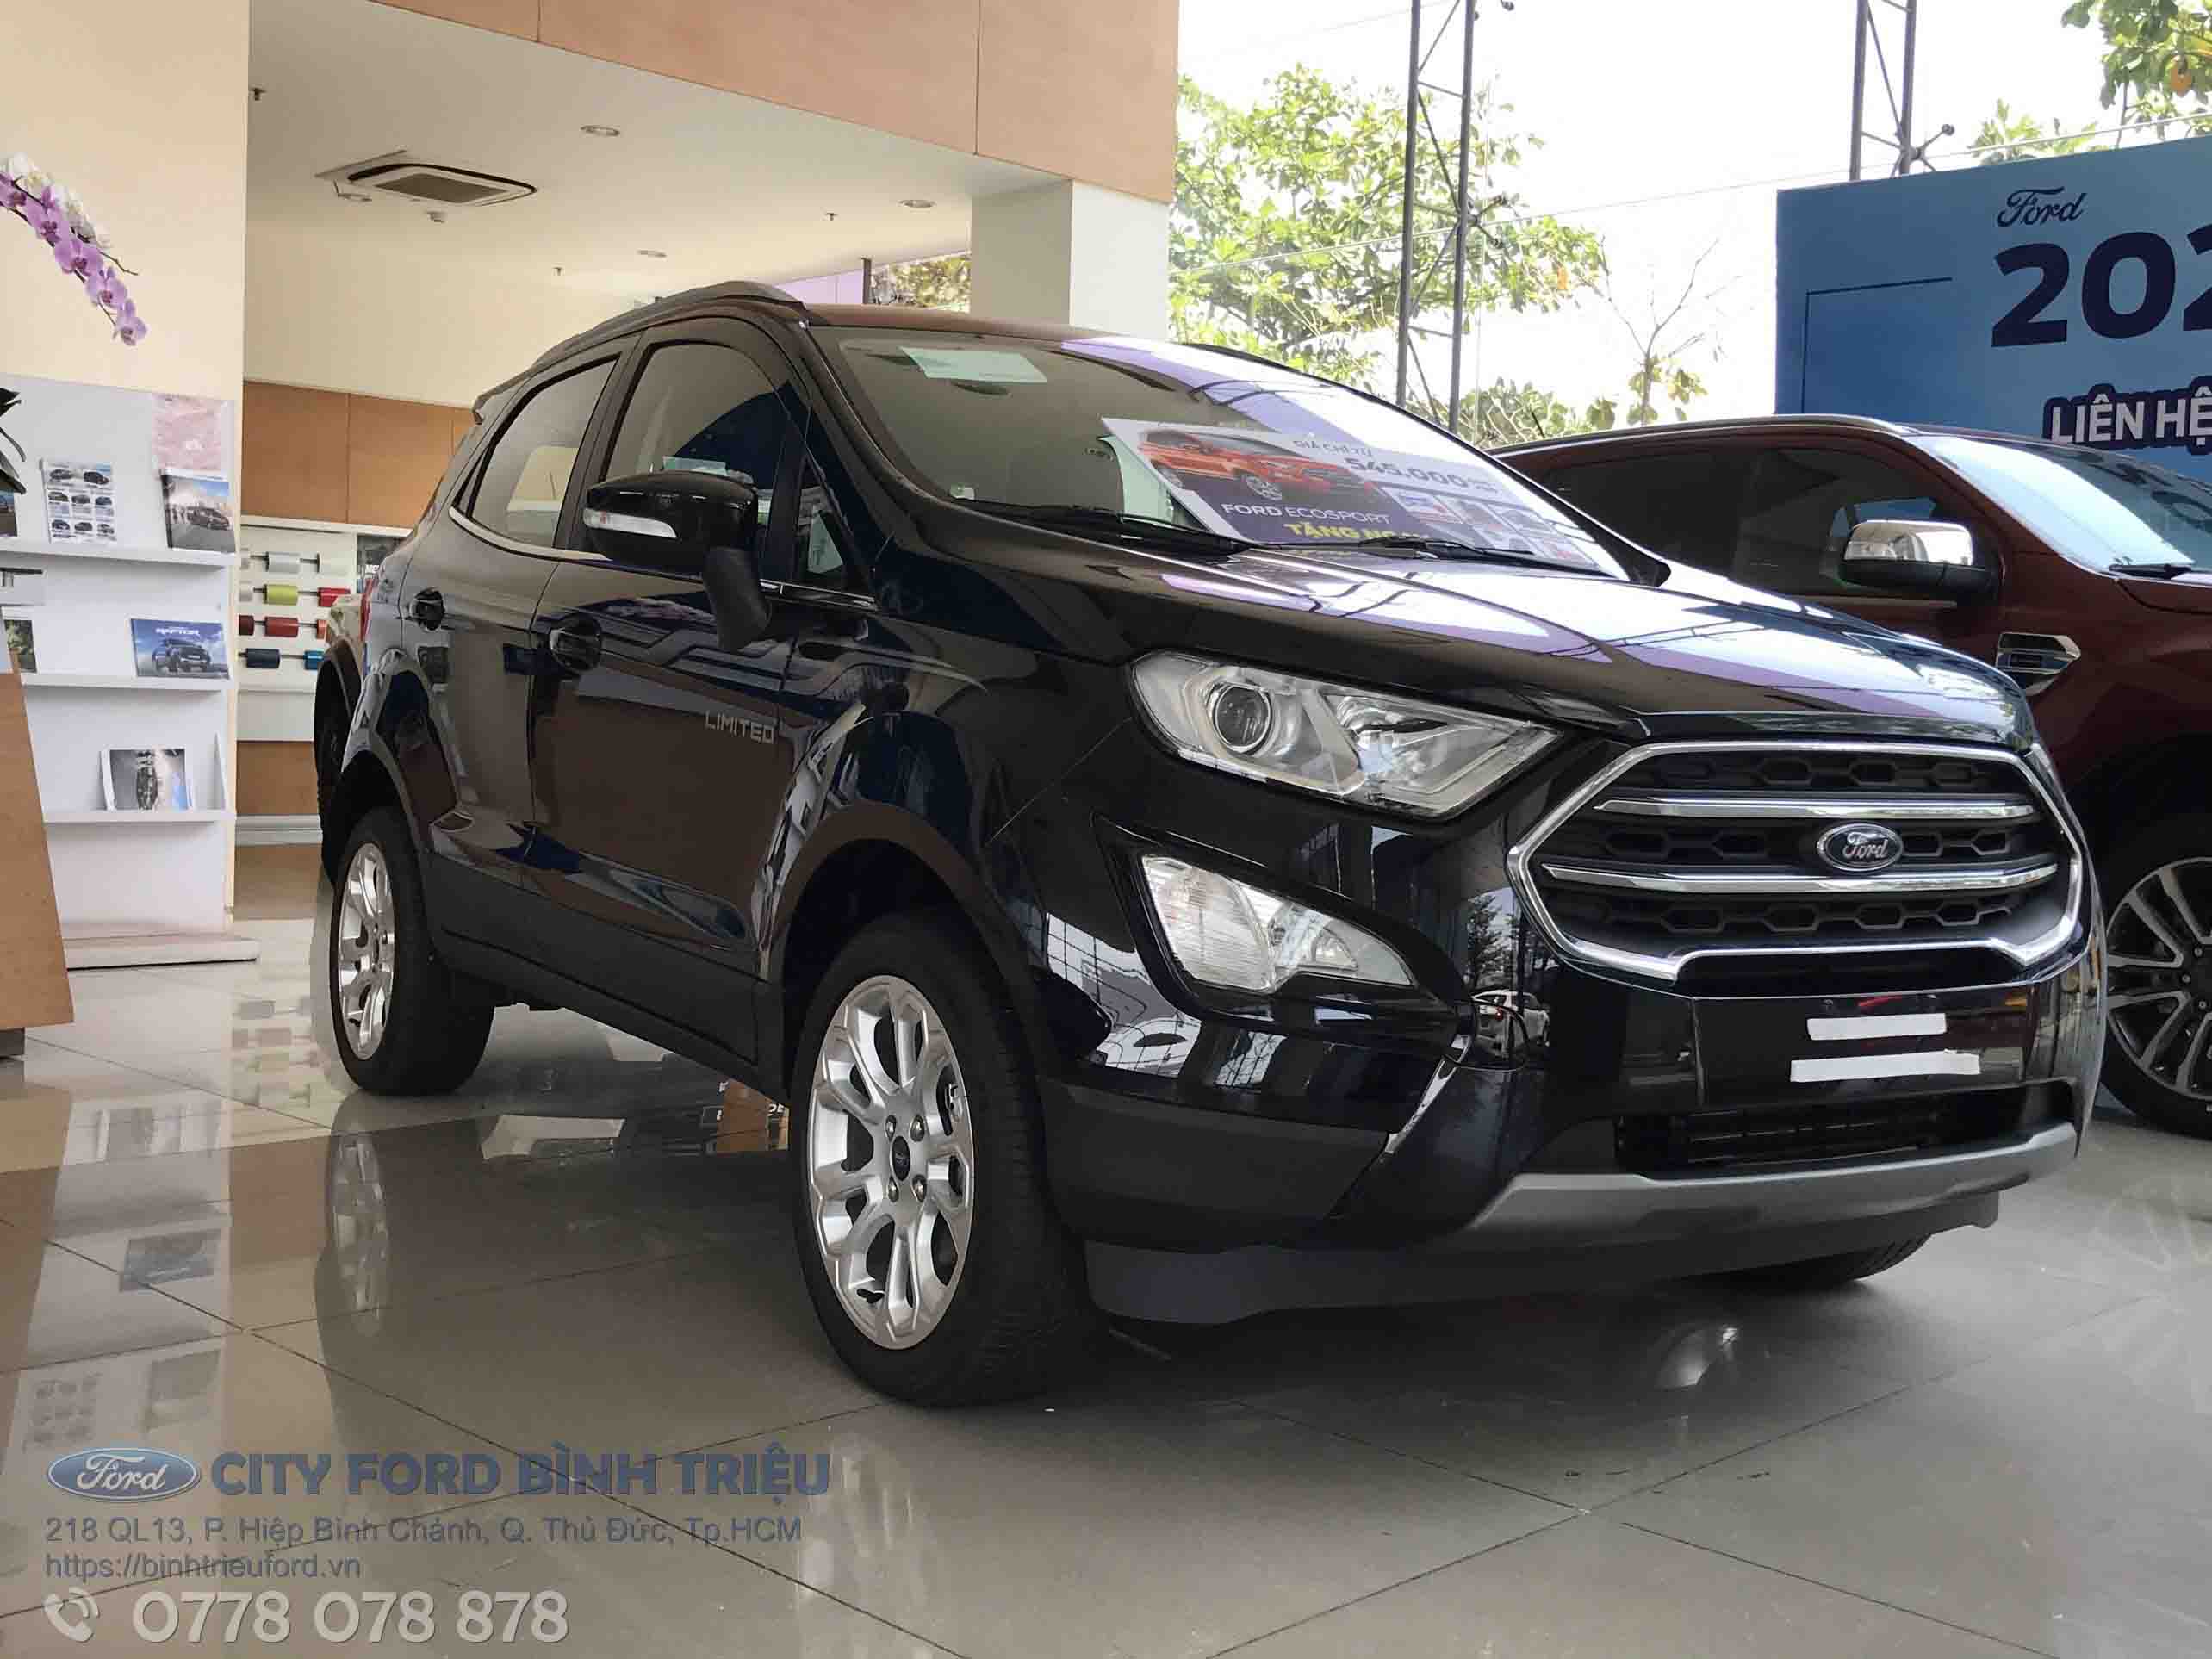 Ford Ecosport - Ford Bình Triệu - Công Ty CP City Auto